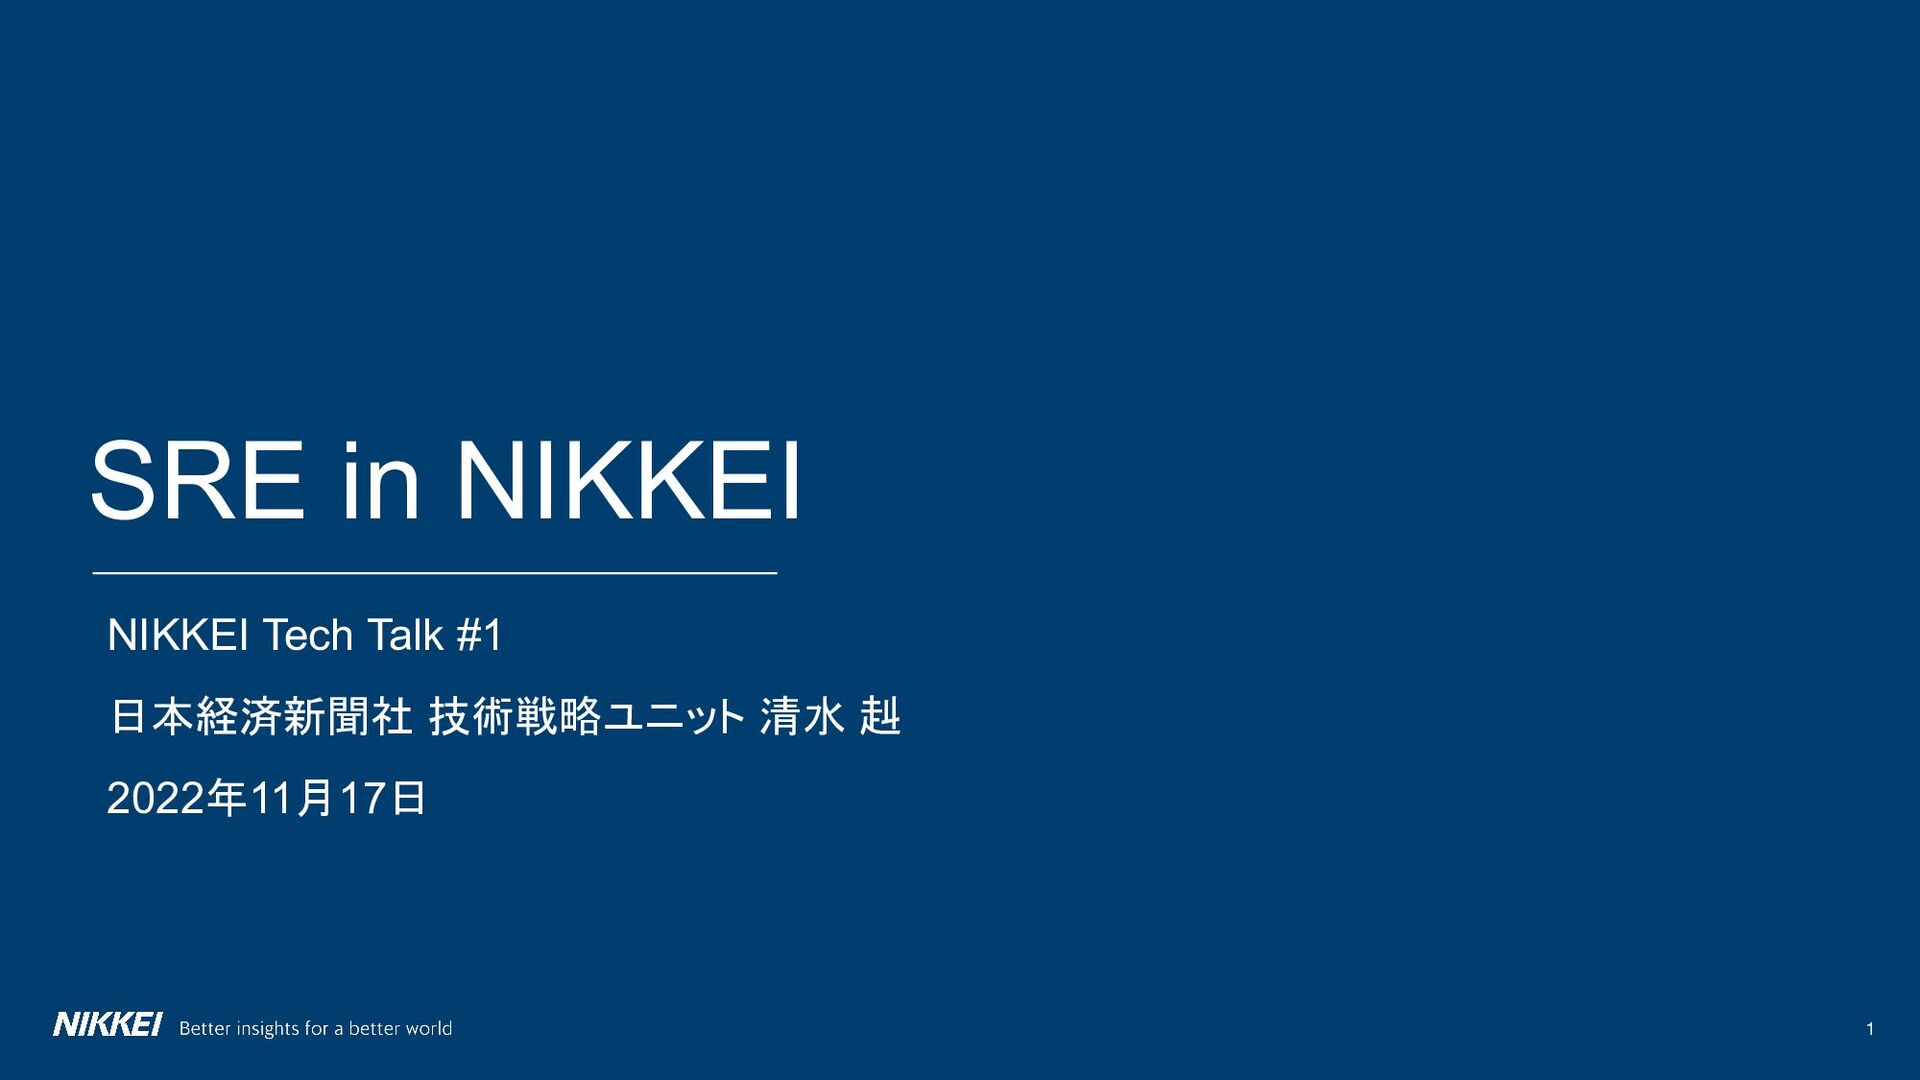 SRE in Nikkei 〜Nikkei Tech Talk vol. 1〜